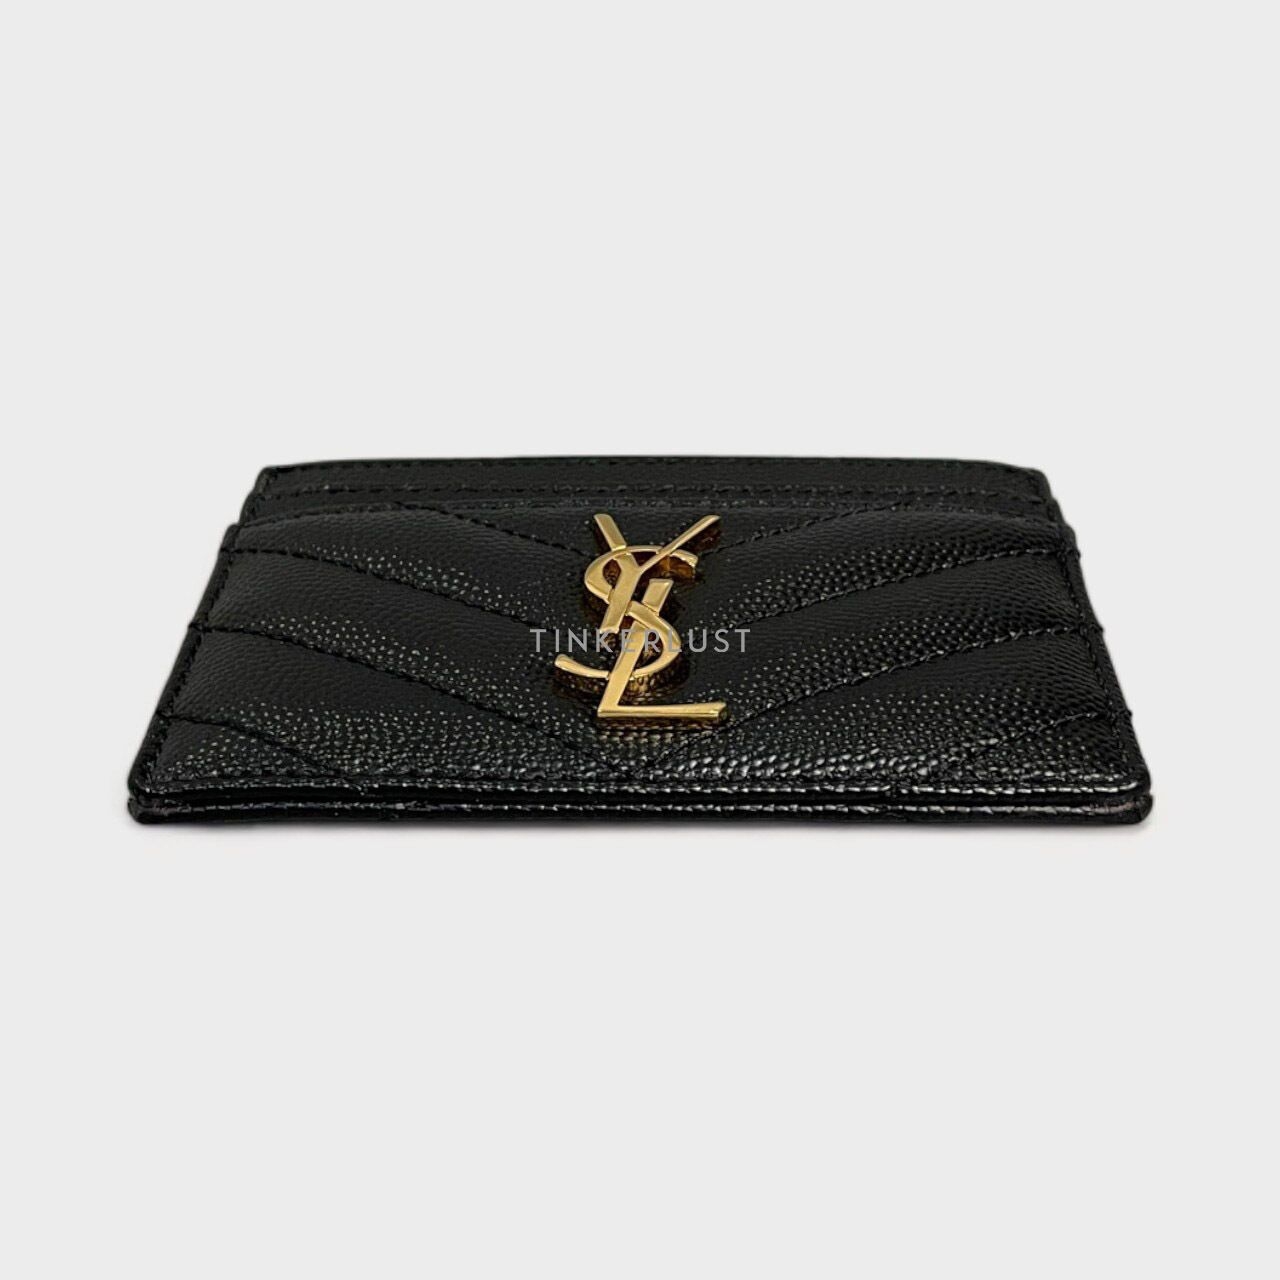 Yves Saint Laurent Black Grain Leather Card Holder